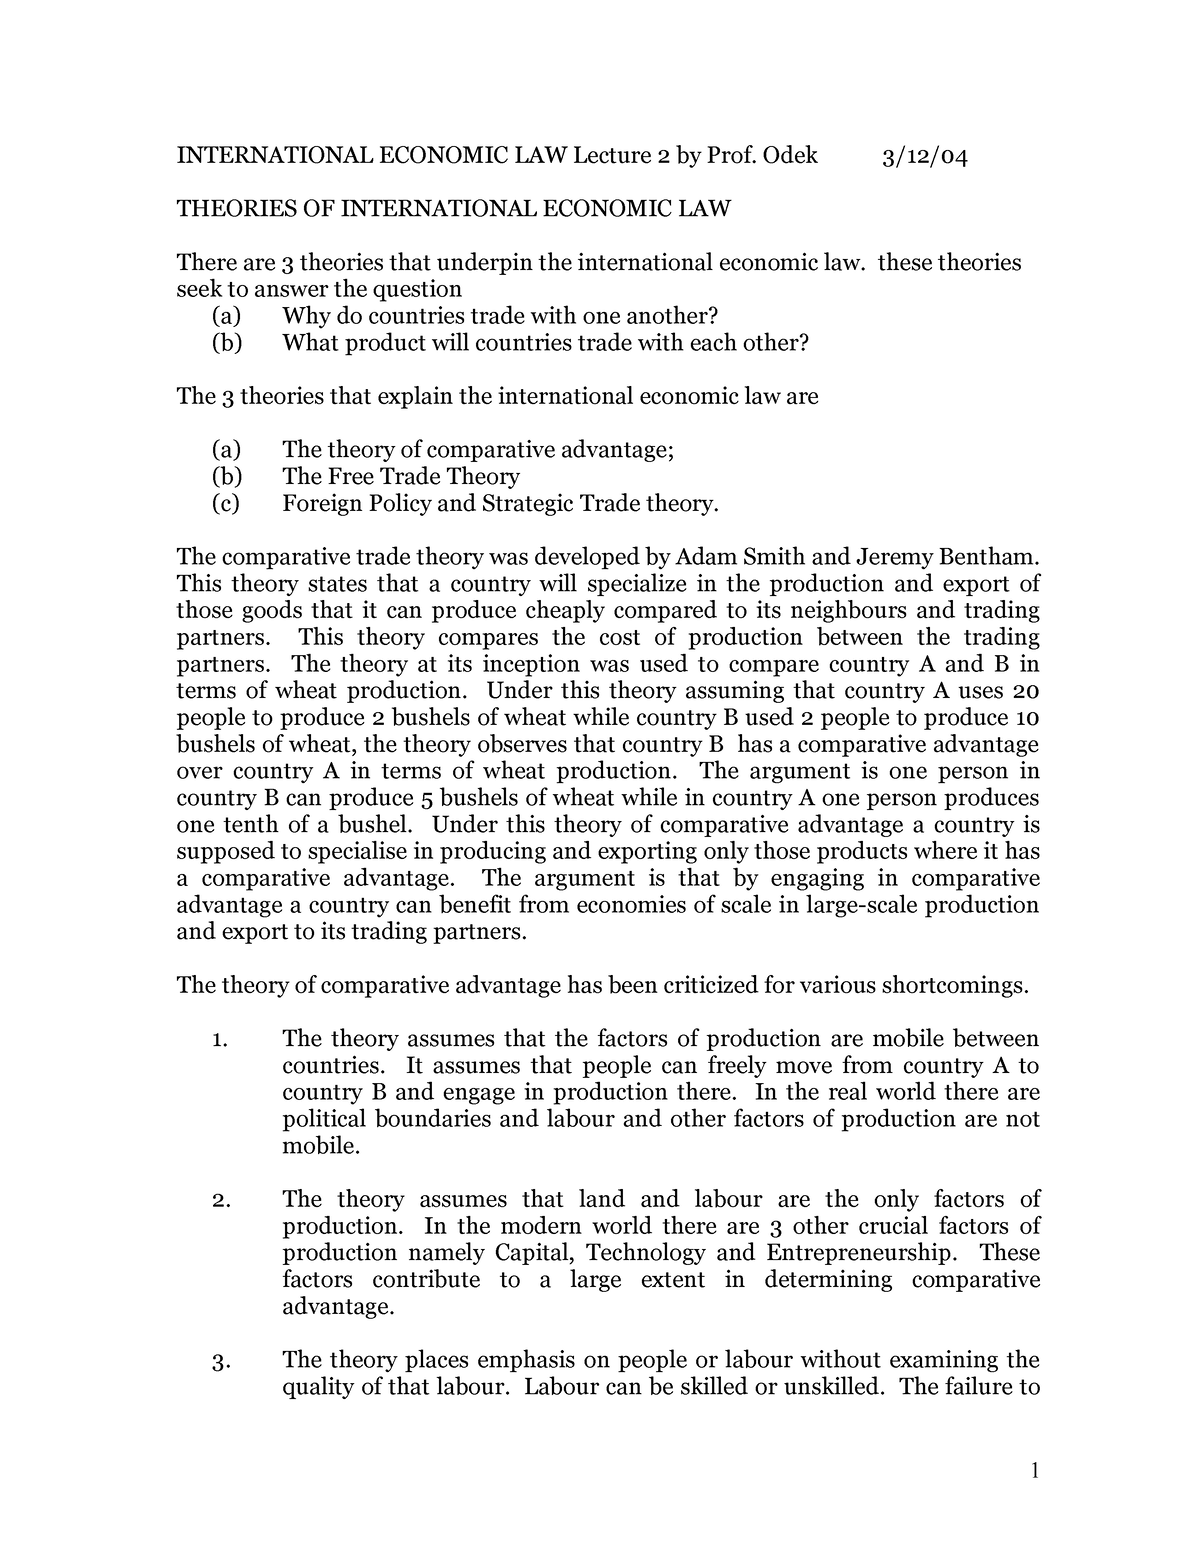 international economic law thesis topics